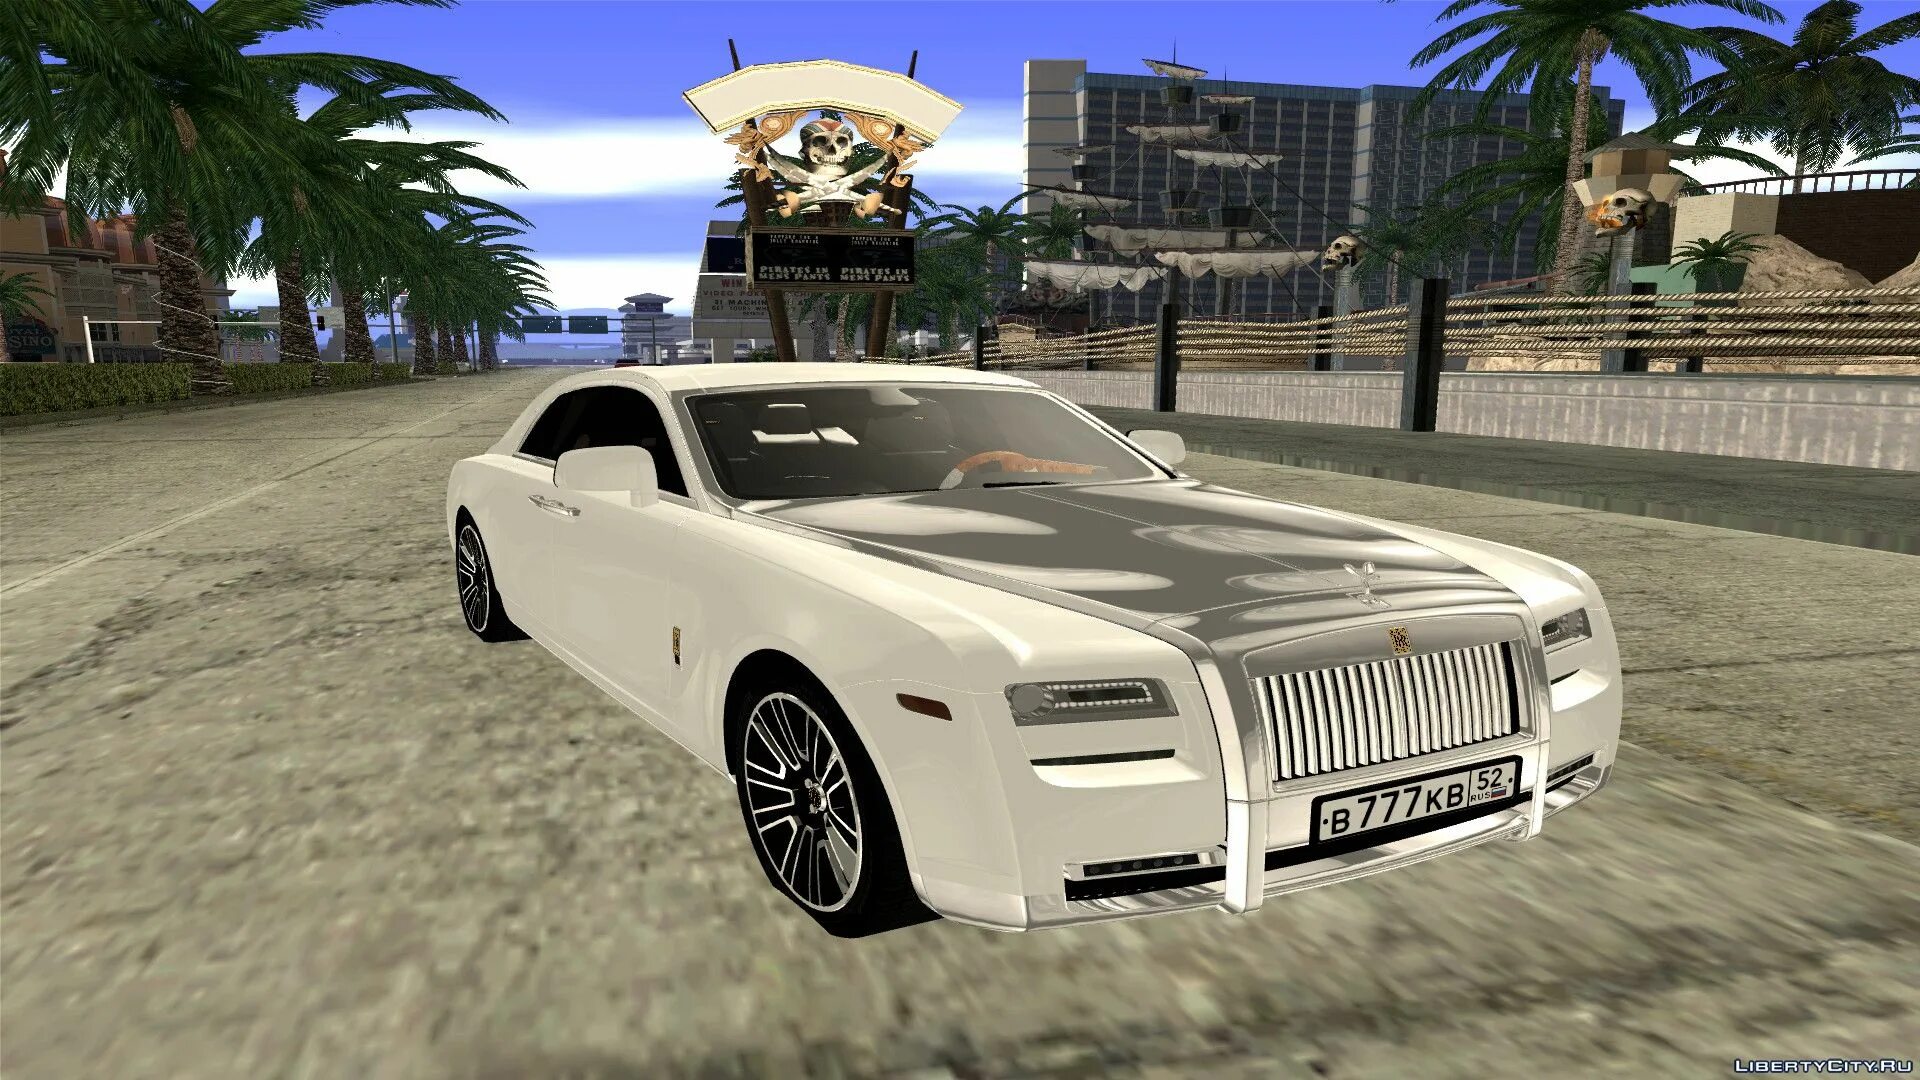 Rolls Royce GTA San Andreas. Файлы для GTA San Andreas: машины,. ГТА Сан машина Rolls Royce. Ашгабат GTA.